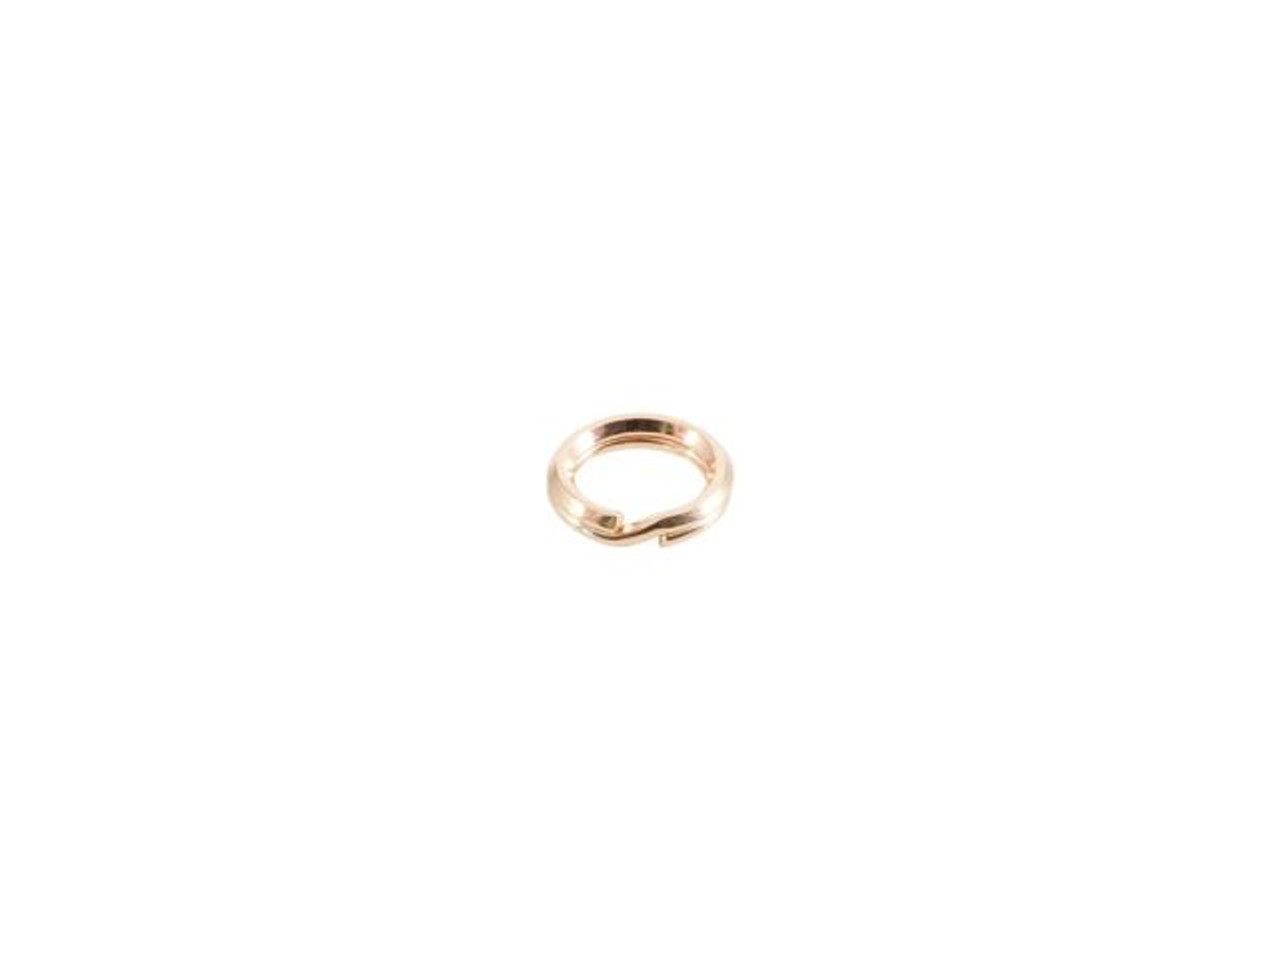 41-619-052 14kt Gold-Filled Split Rings, 5mm - Rings & Things